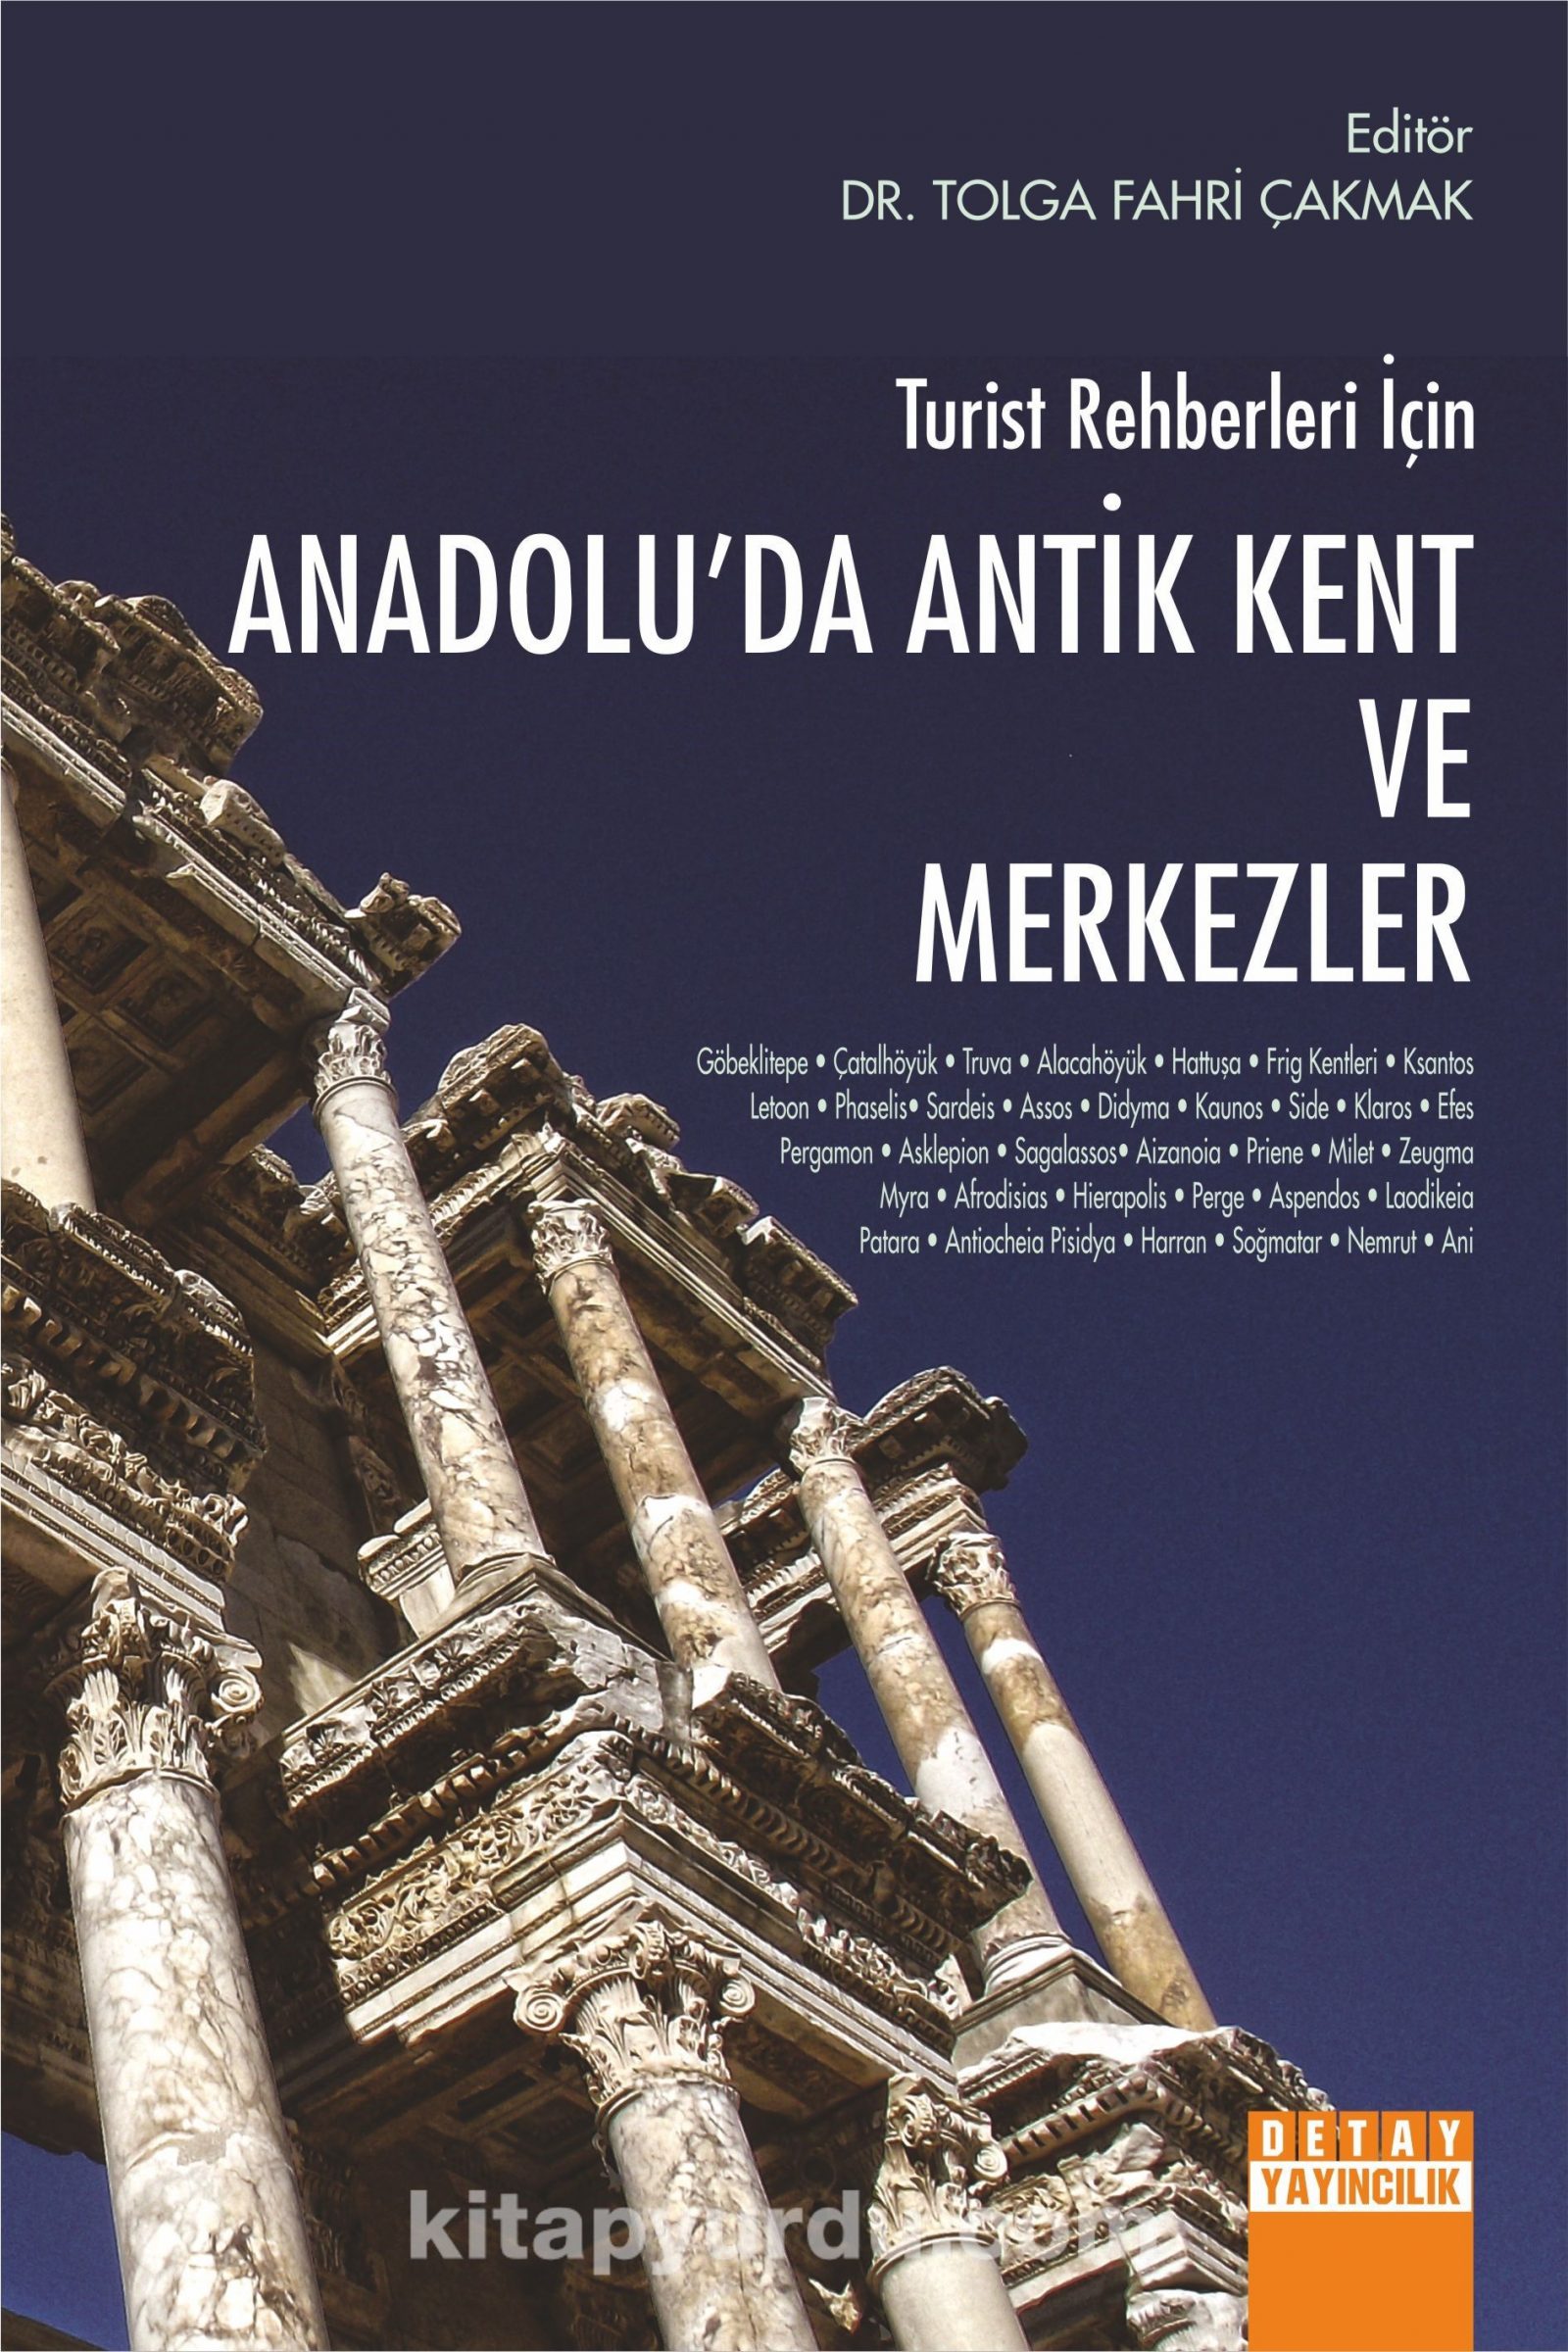 Turist Rehberleri İçin Anadolu’da Antik Kent ve Merkezler